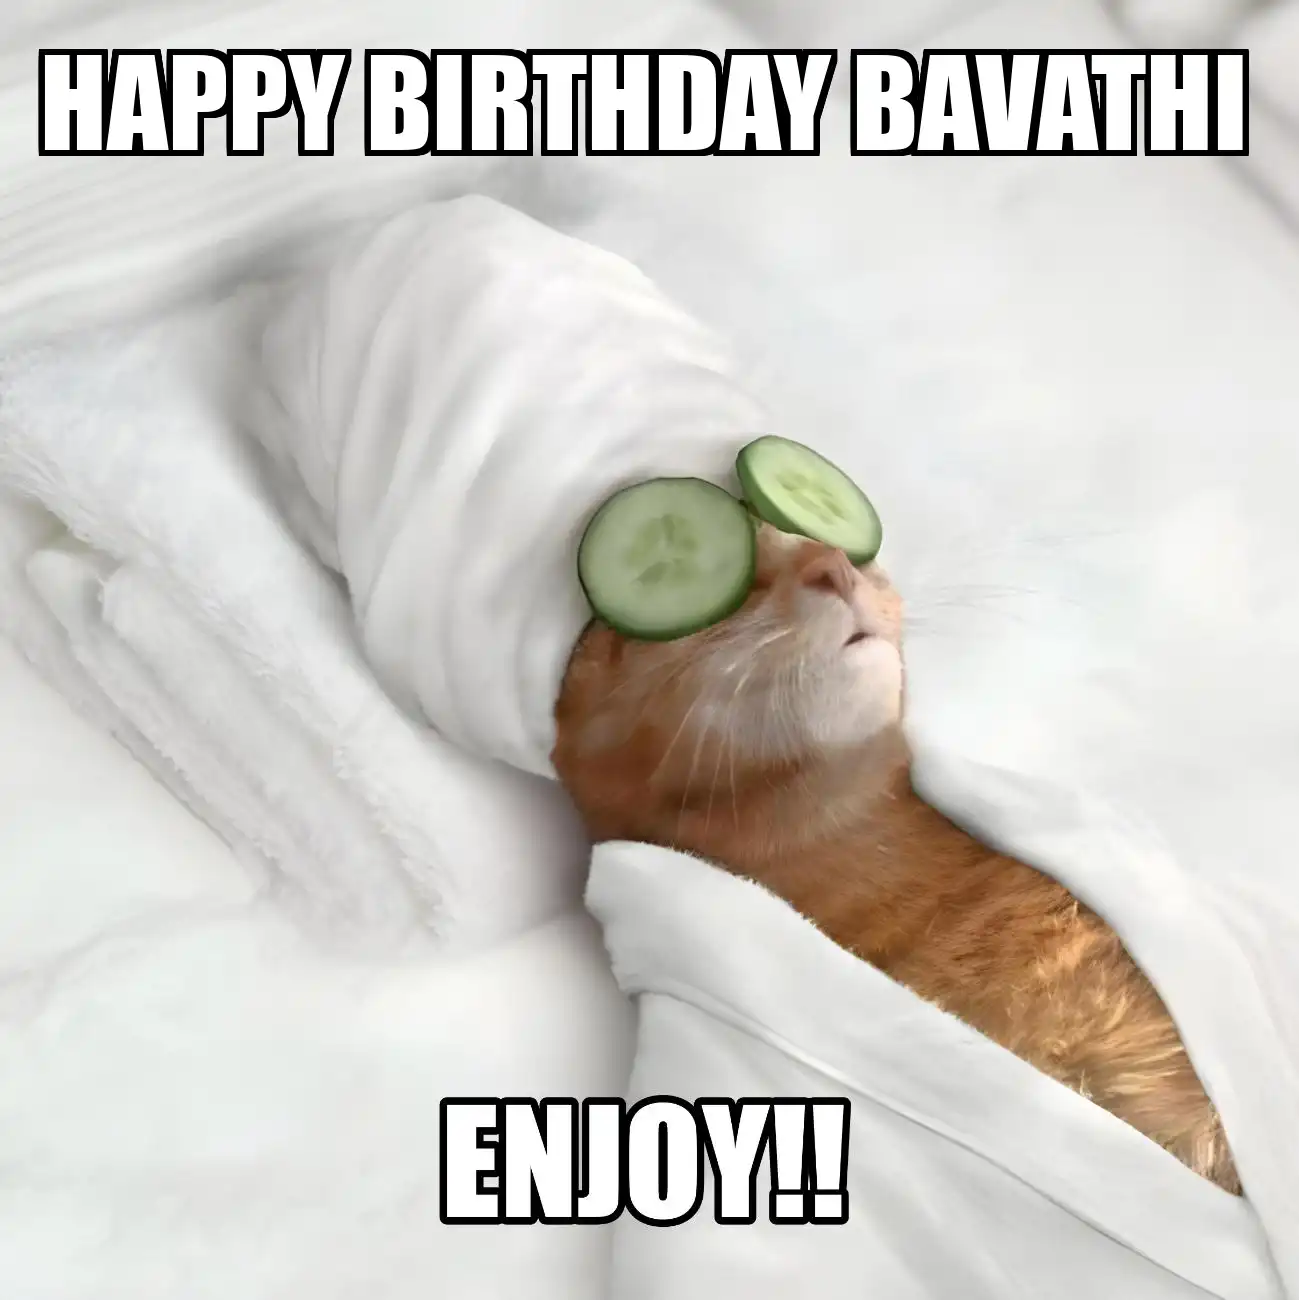 Happy Birthday Bavathi Enjoy Cat Meme